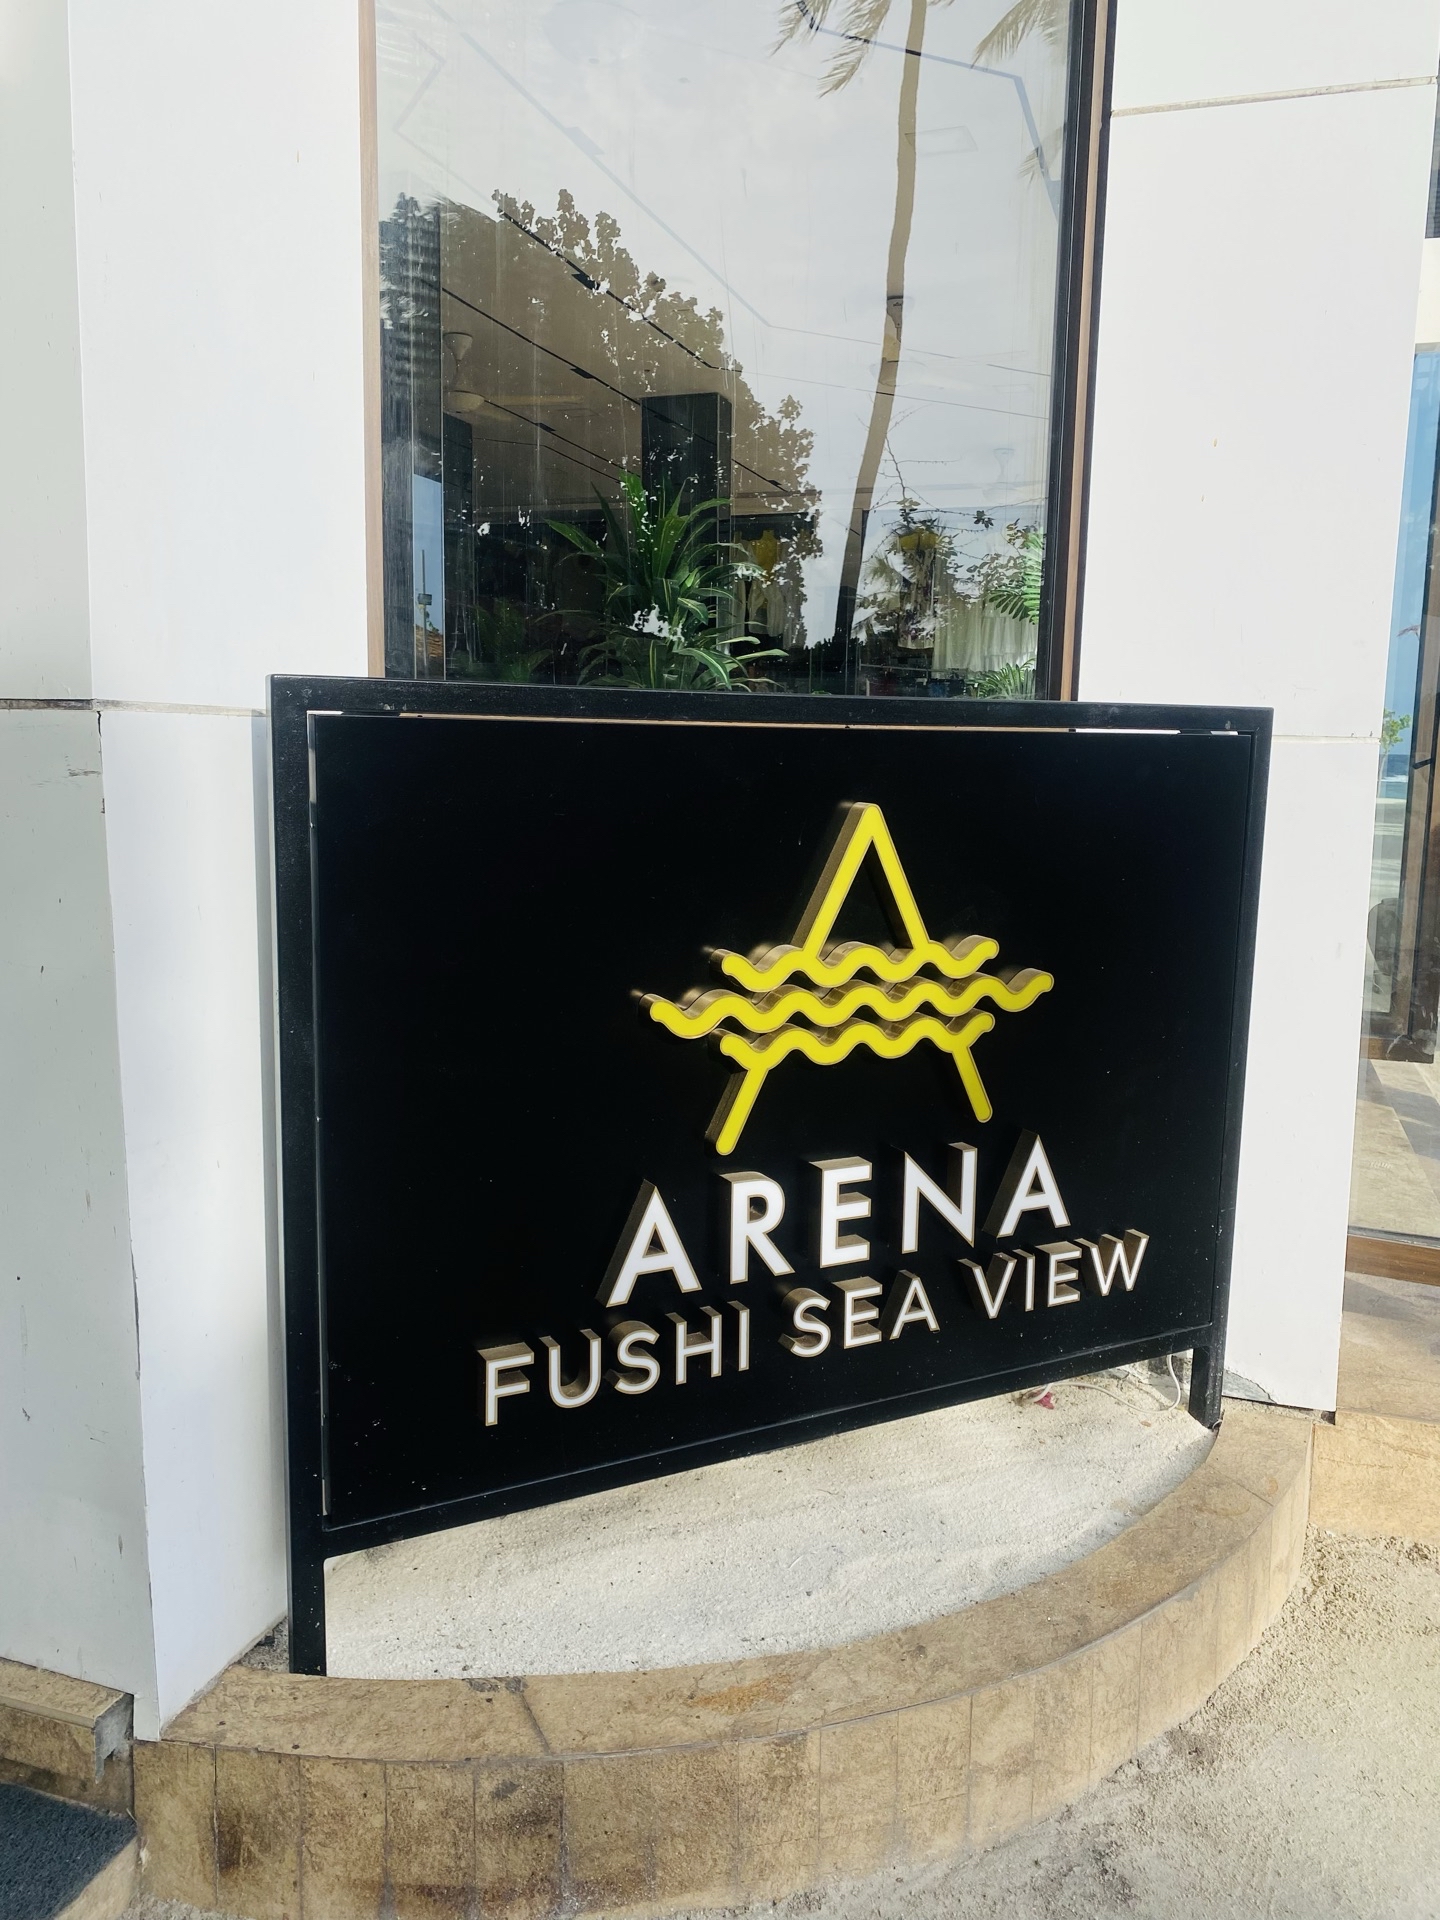 这个价格的酒店在马尔代夫应该都差不多这样了，反正在马代肯定是性价比高的，酒店就在maafushi海滩